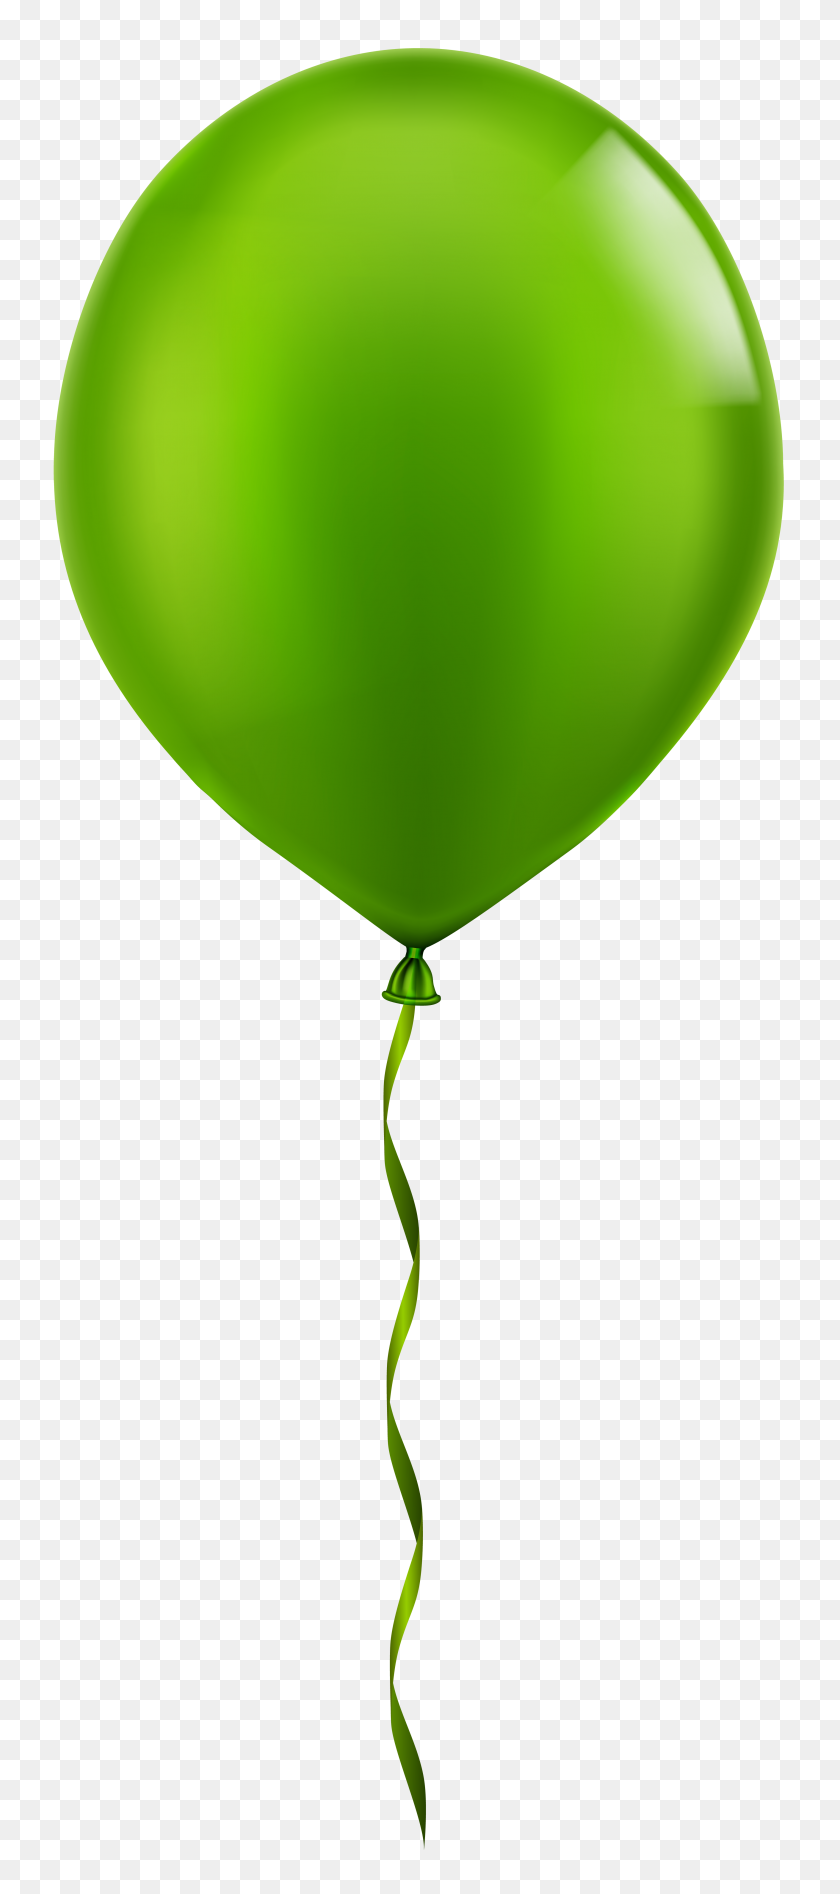 Single Balloon Clipart Clip Art Library - vrogue.co